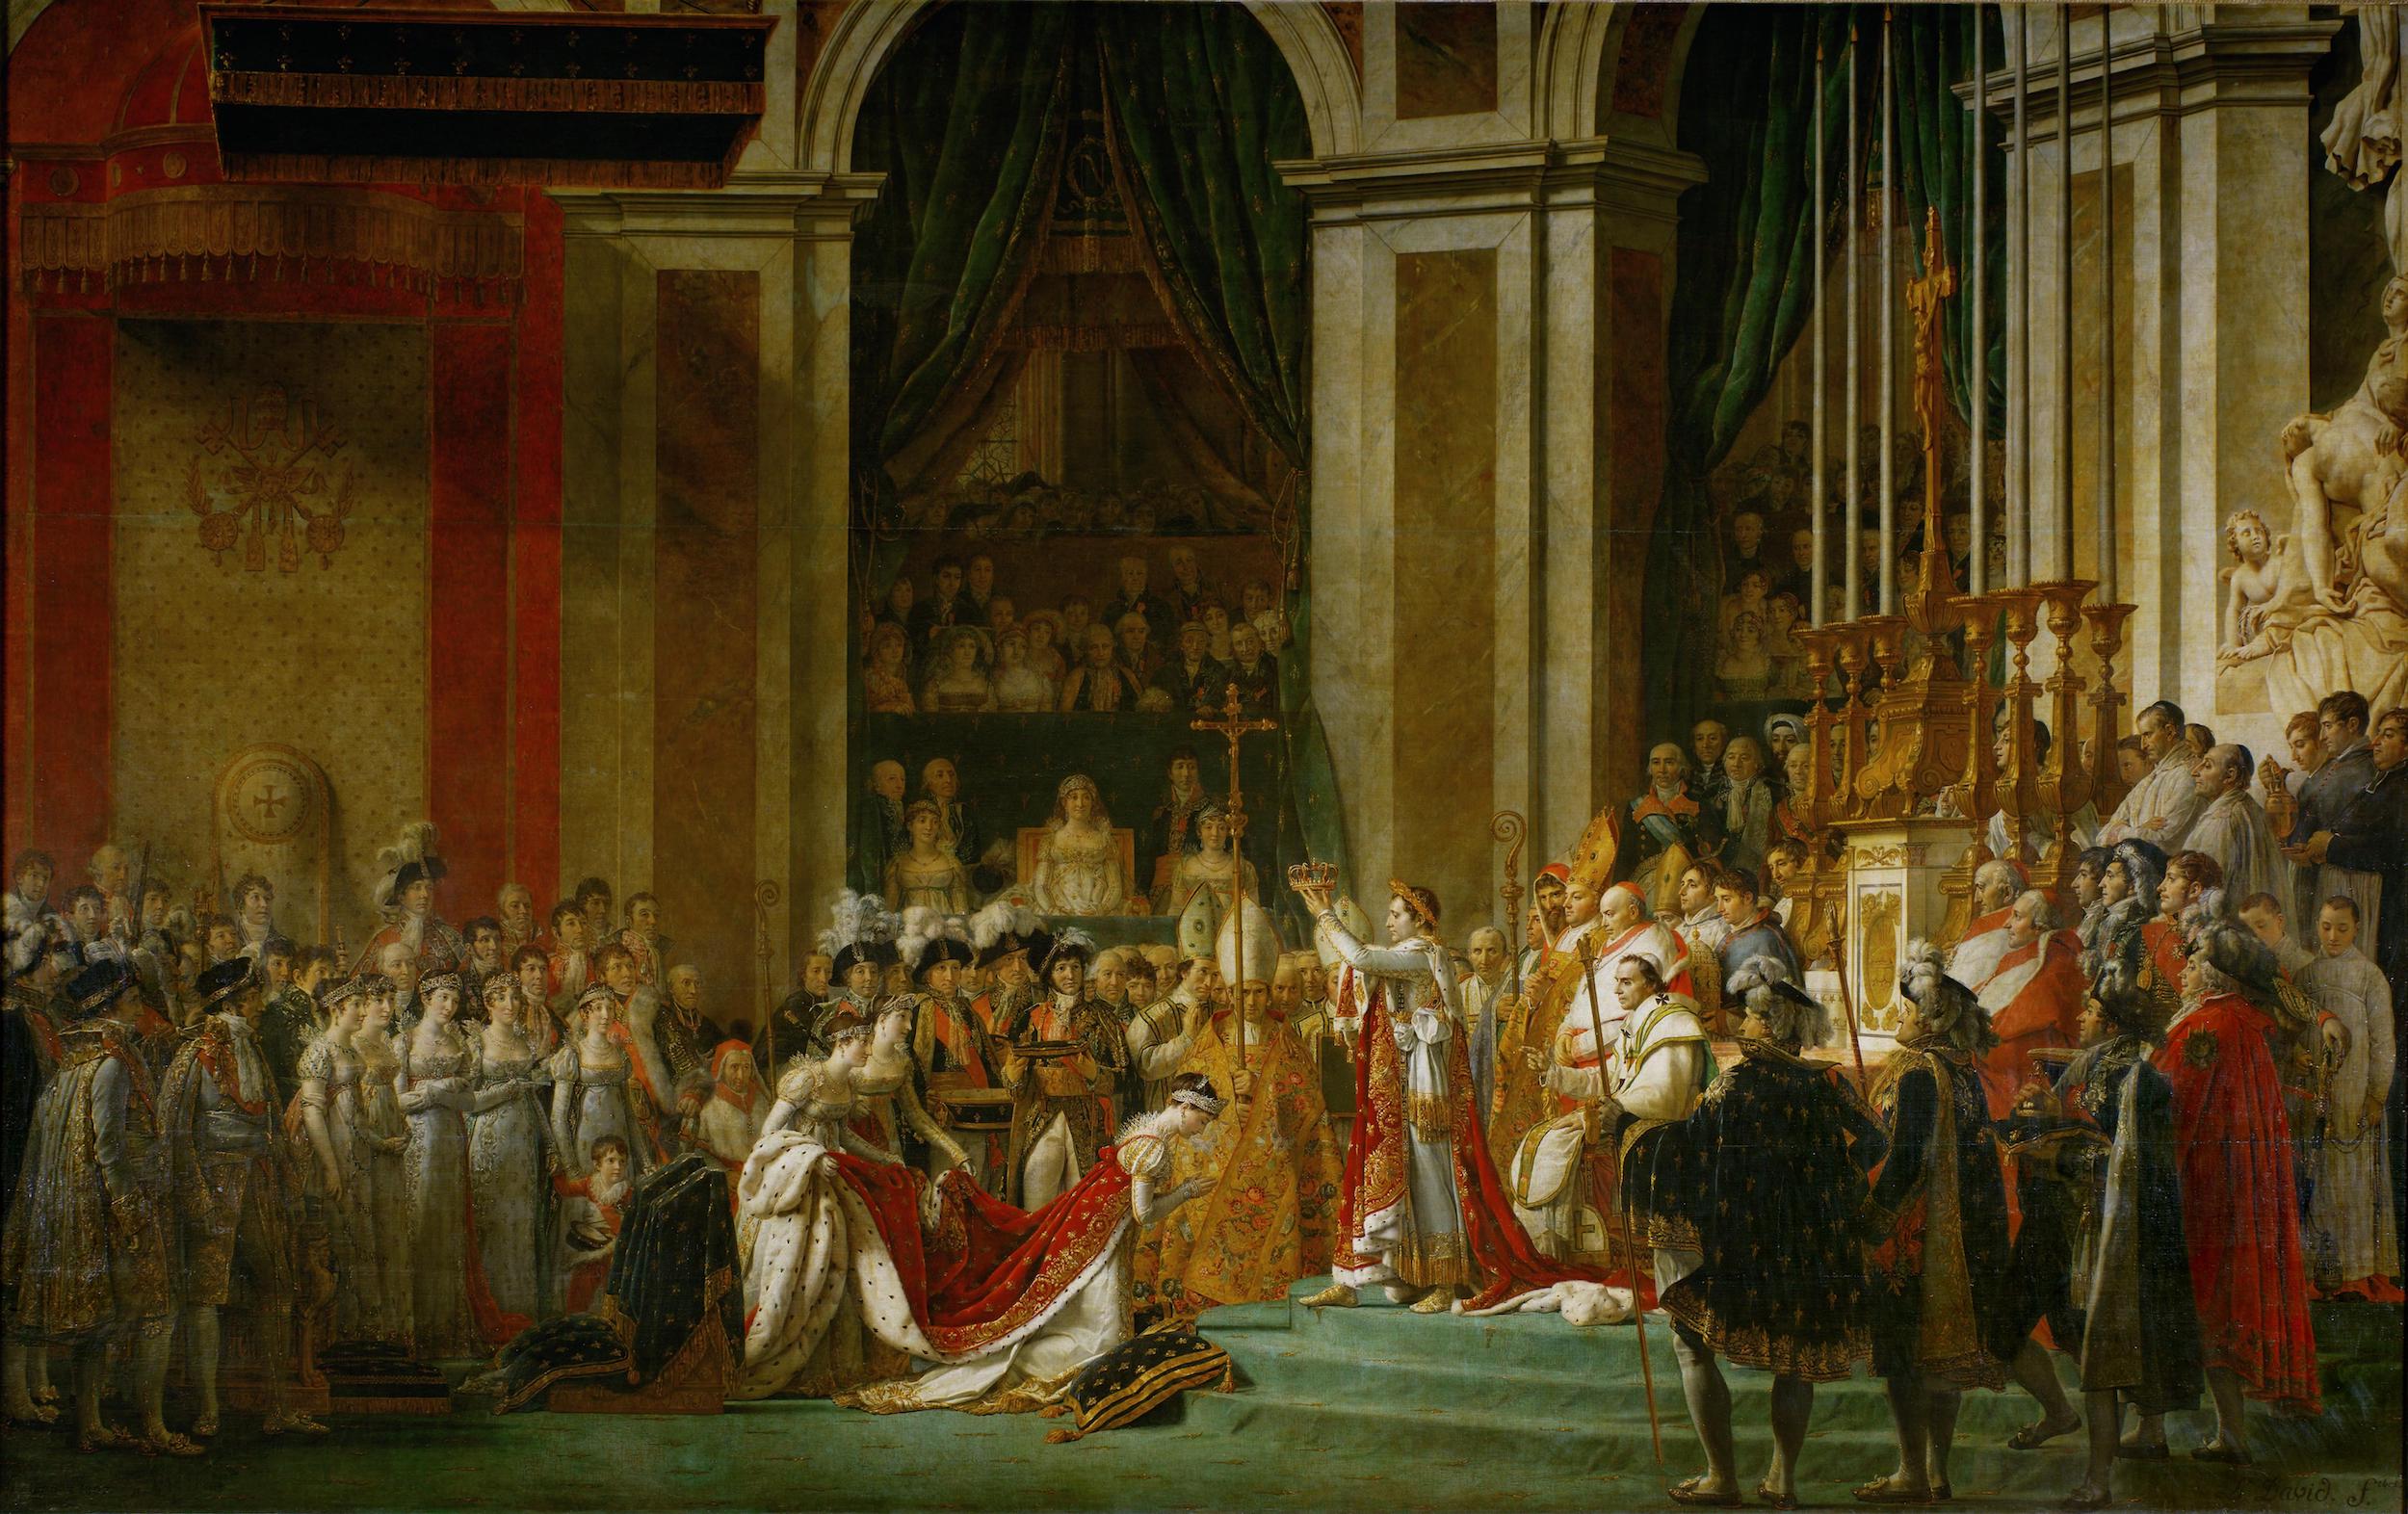 Le Couronnement de l'Empereur Napoléon Ier et l'Impératrice Joséphine by Jacques-Louis David - 1806-1807 - 6,21 x 9.79 m Musée du Louvre